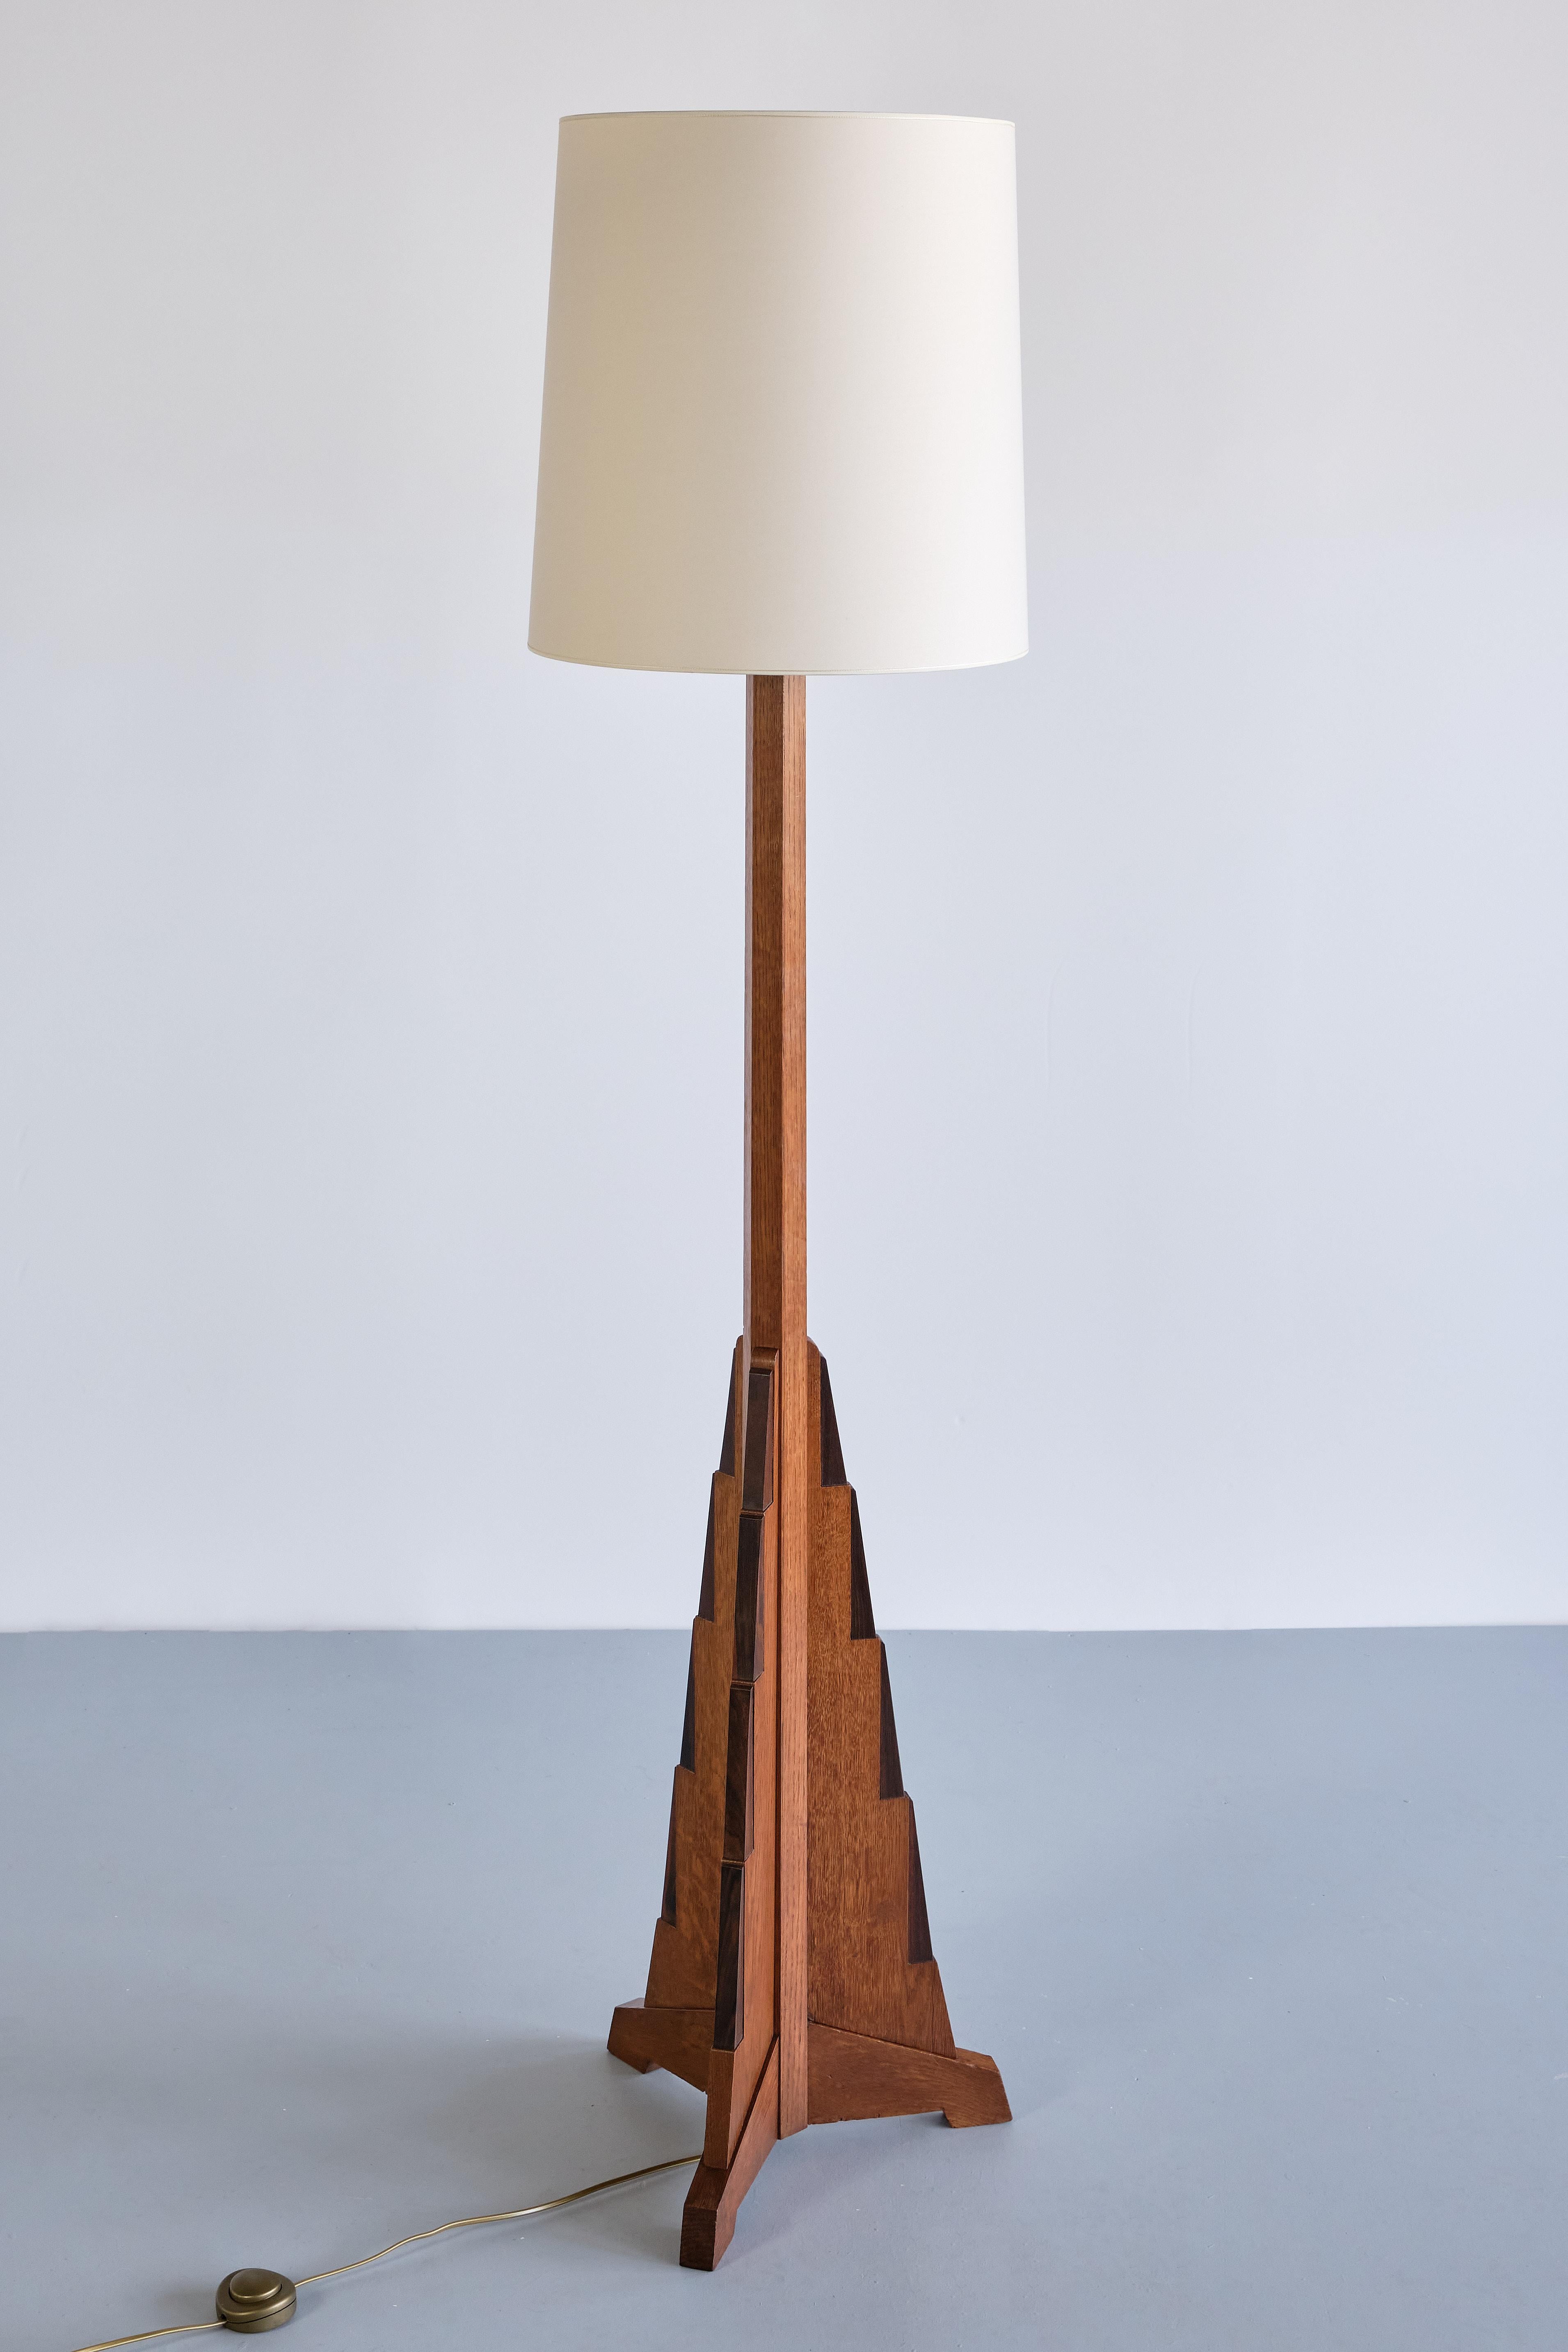 Ce rare lampadaire a été conçu par le designer et architecte néerlandais Cor Alons au début des années 1930.
Le design est défini par la forme géométrique et triangulaire de la base qui a été exécutée en bois de chêne massif. La base en gradins